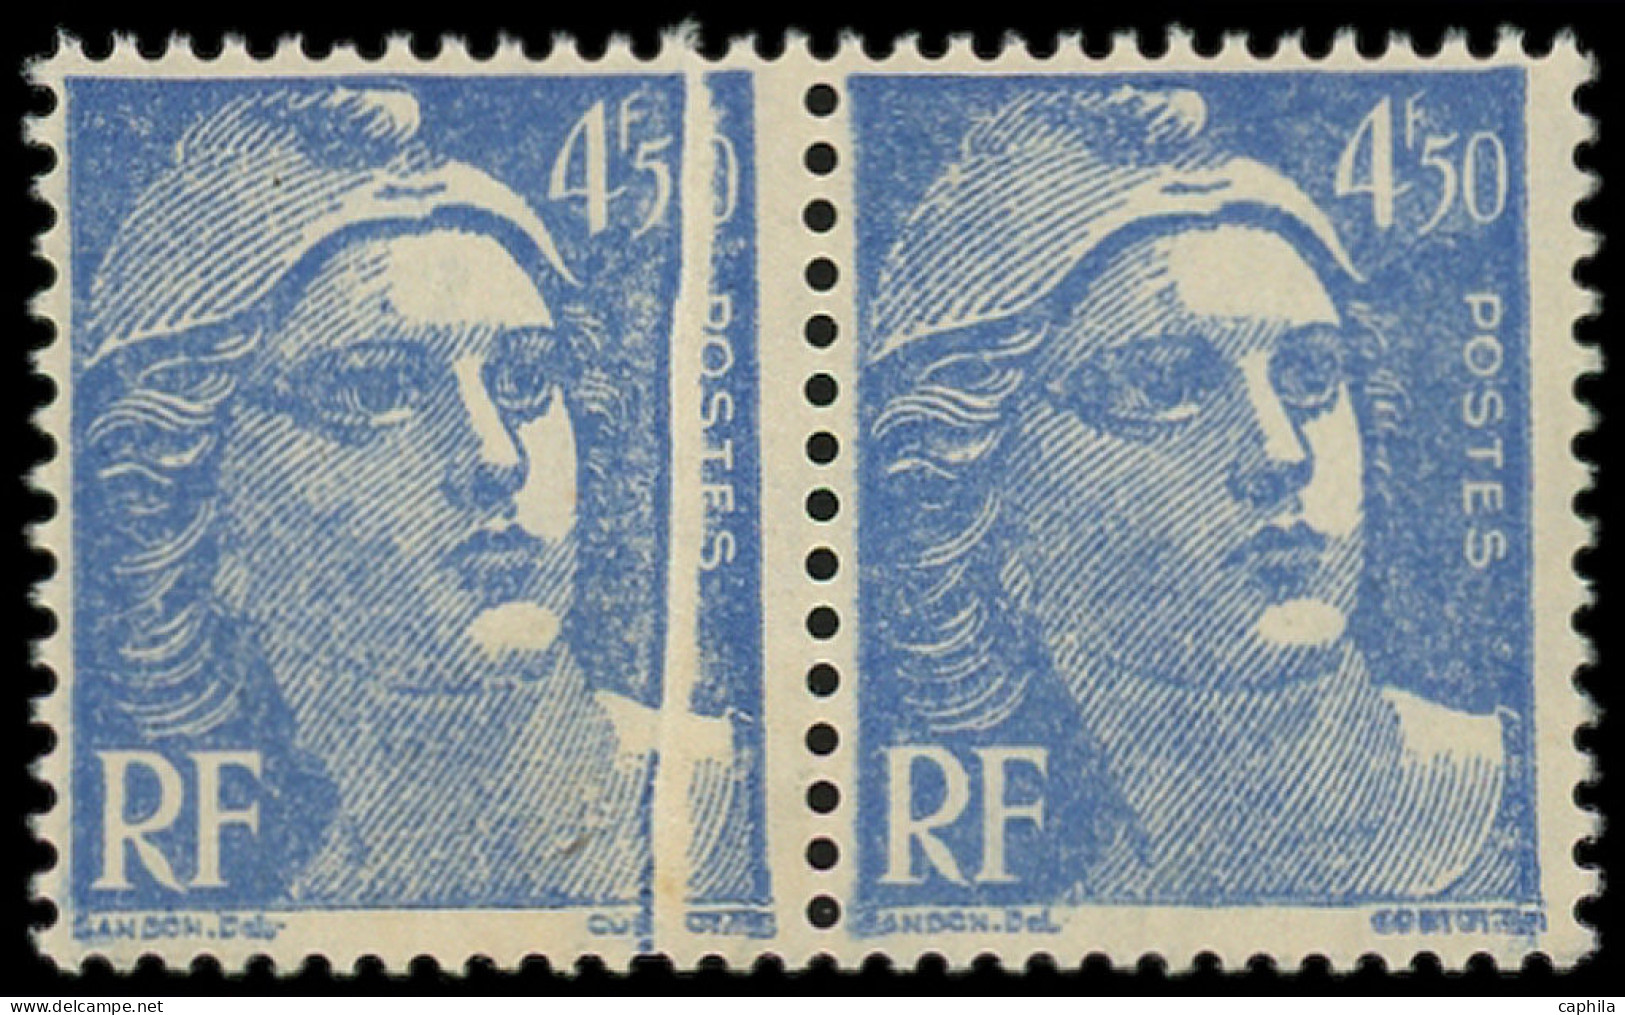 ** FRANCE - Poste - 718A, Paire Horizontale Dont 1 Ex Pli Accordéon: 4.50f. Bleu - Unused Stamps